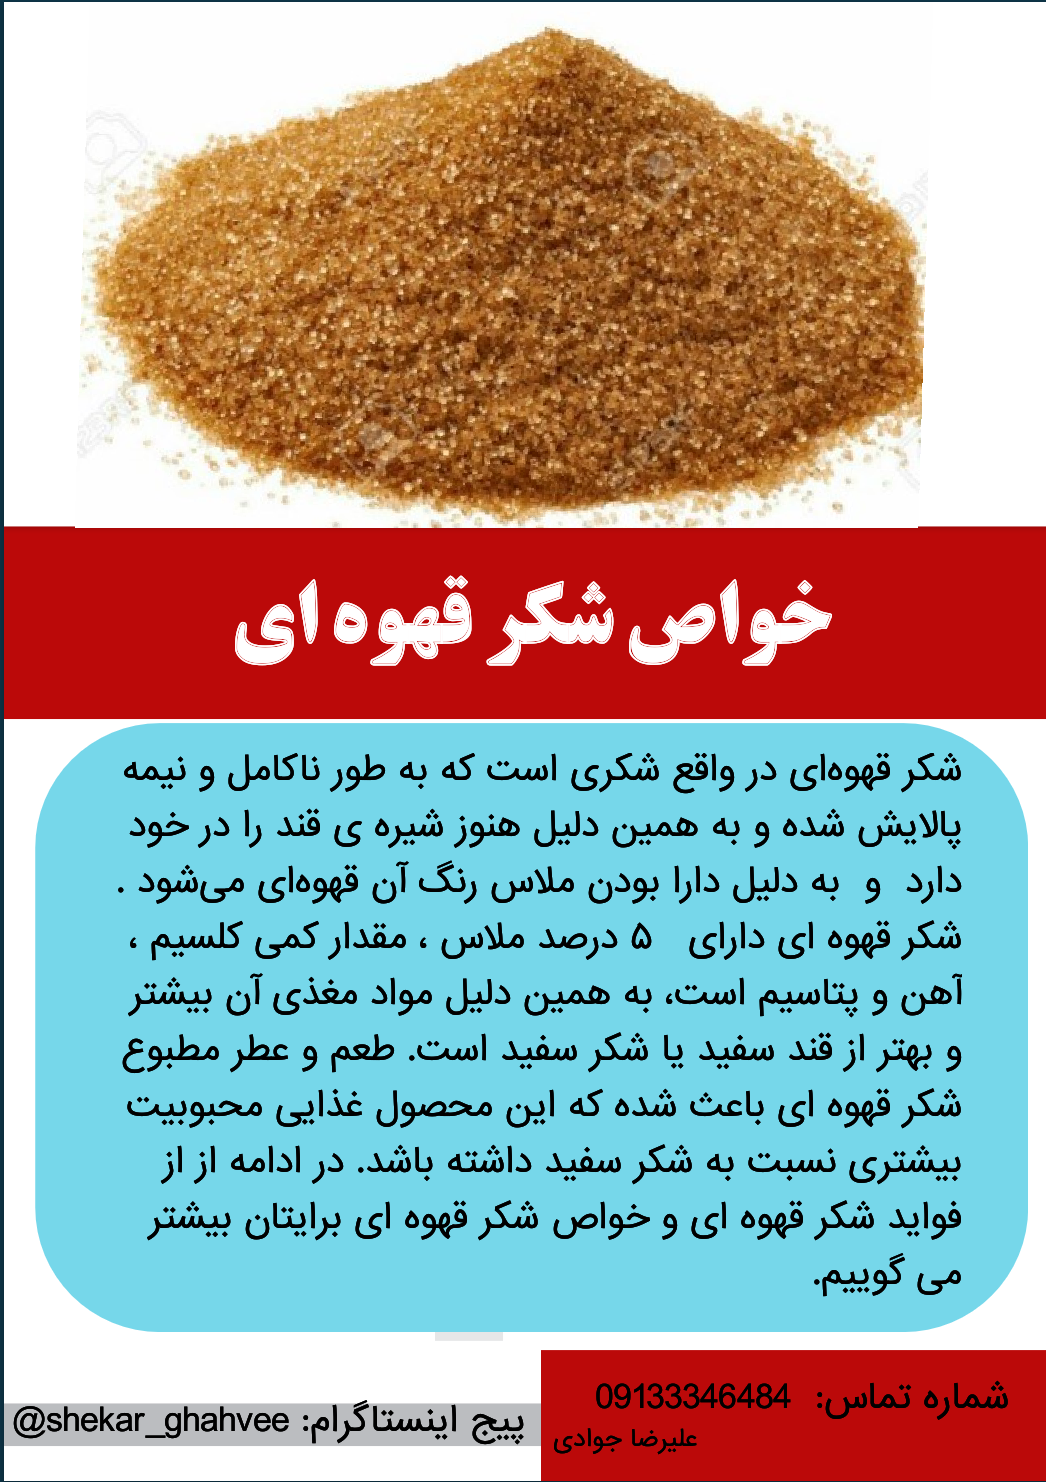 بهترین شکر قهوه ای موجود در بازار ایران